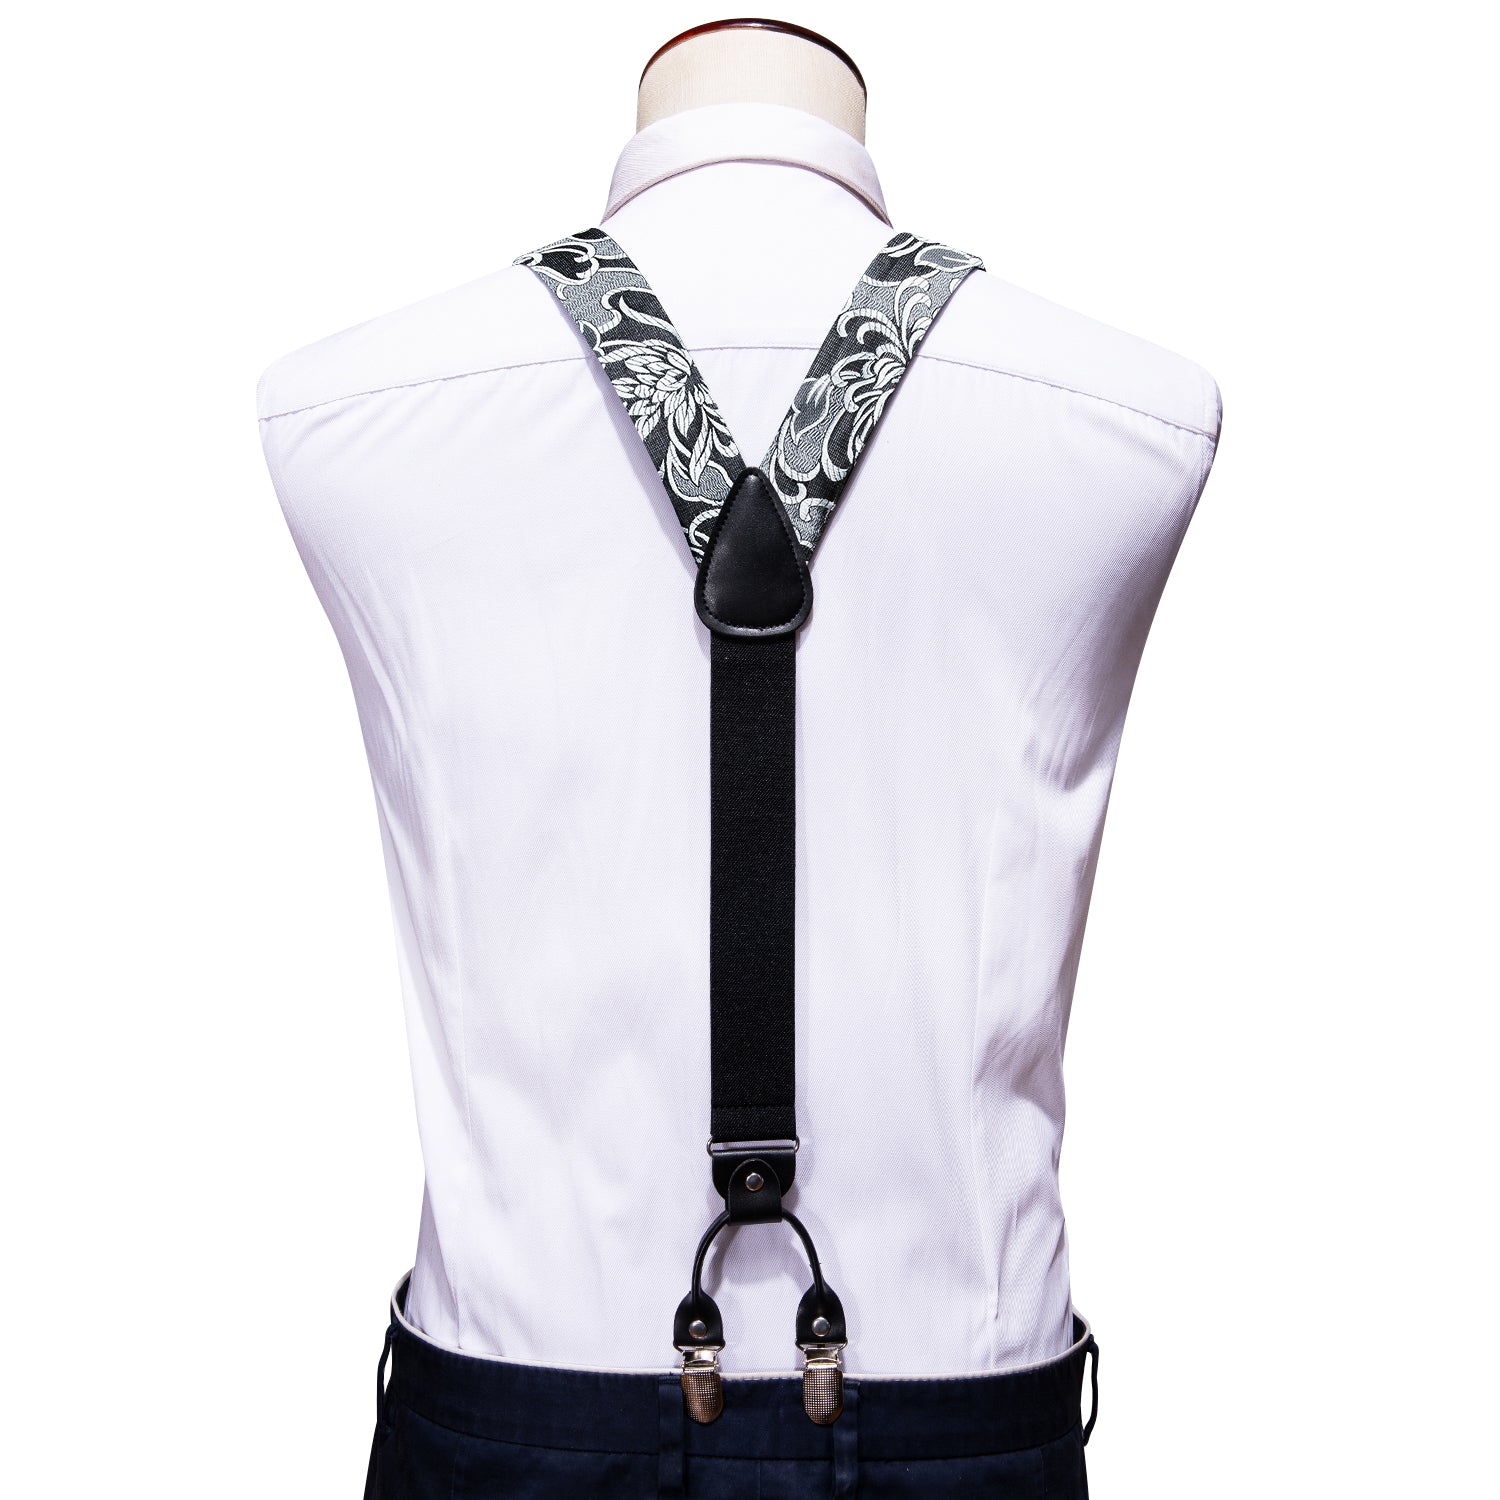 Black Silver Floral Y Back Adjustable Bow Tie Suspenders Set